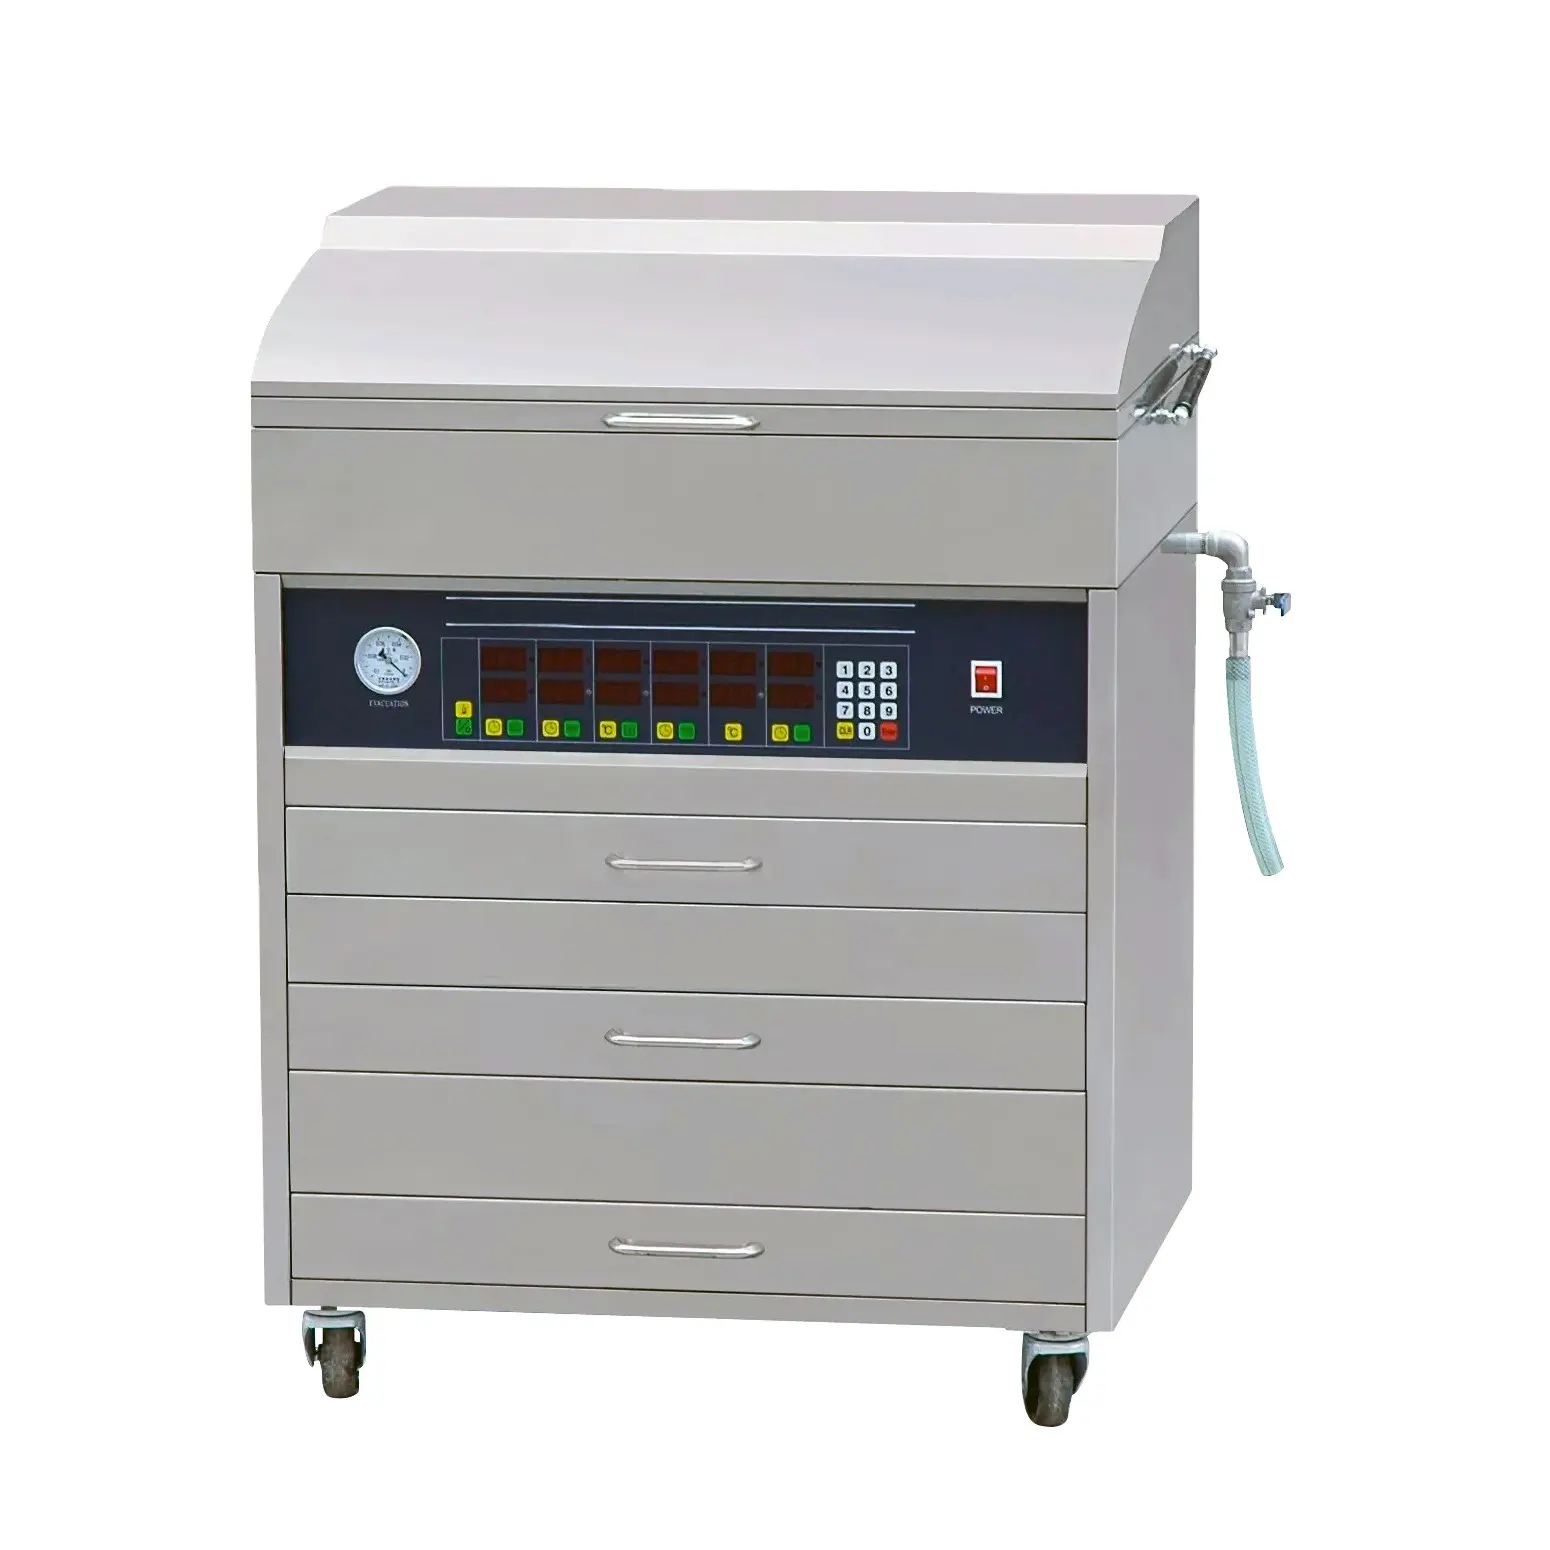 Macchina per la produzione di lastre flessografiche in polimero fotopolimero gomma o resina per macchina da stampa flessografica